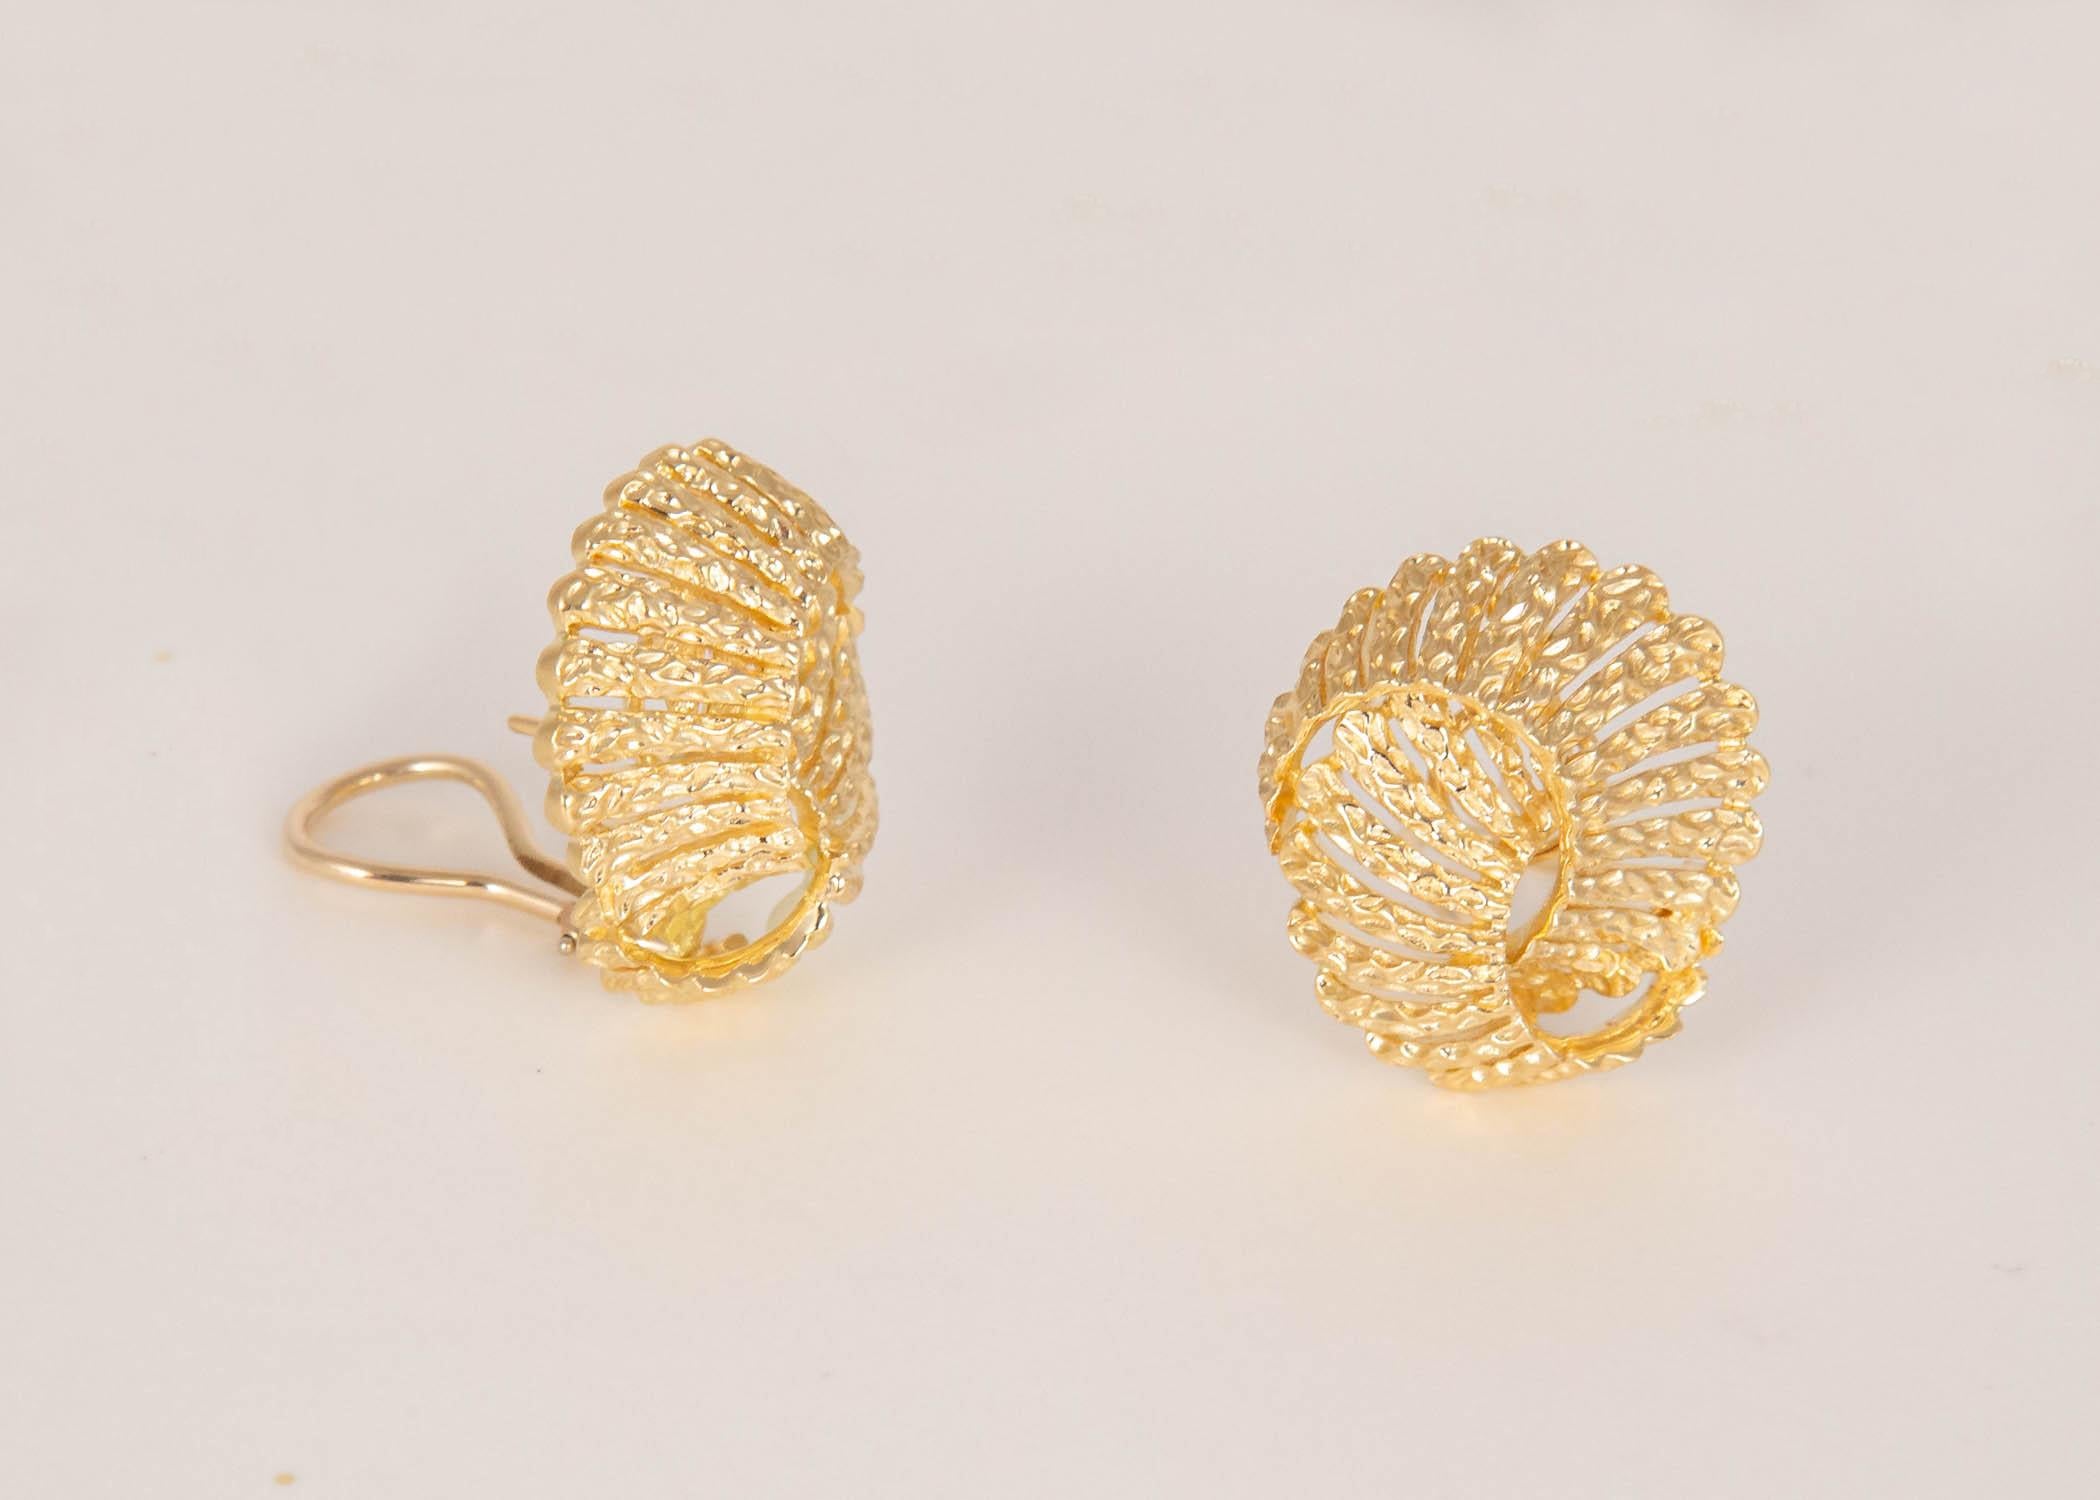 Einfach elegant. Dieses Paar durchbrochener Goldohrringe von Tiffany & Co. ist ein großartiges Beispiel für das klassische Design und die Qualität, für die Tiffany berühmt ist. 1 Zoll in der Größe.